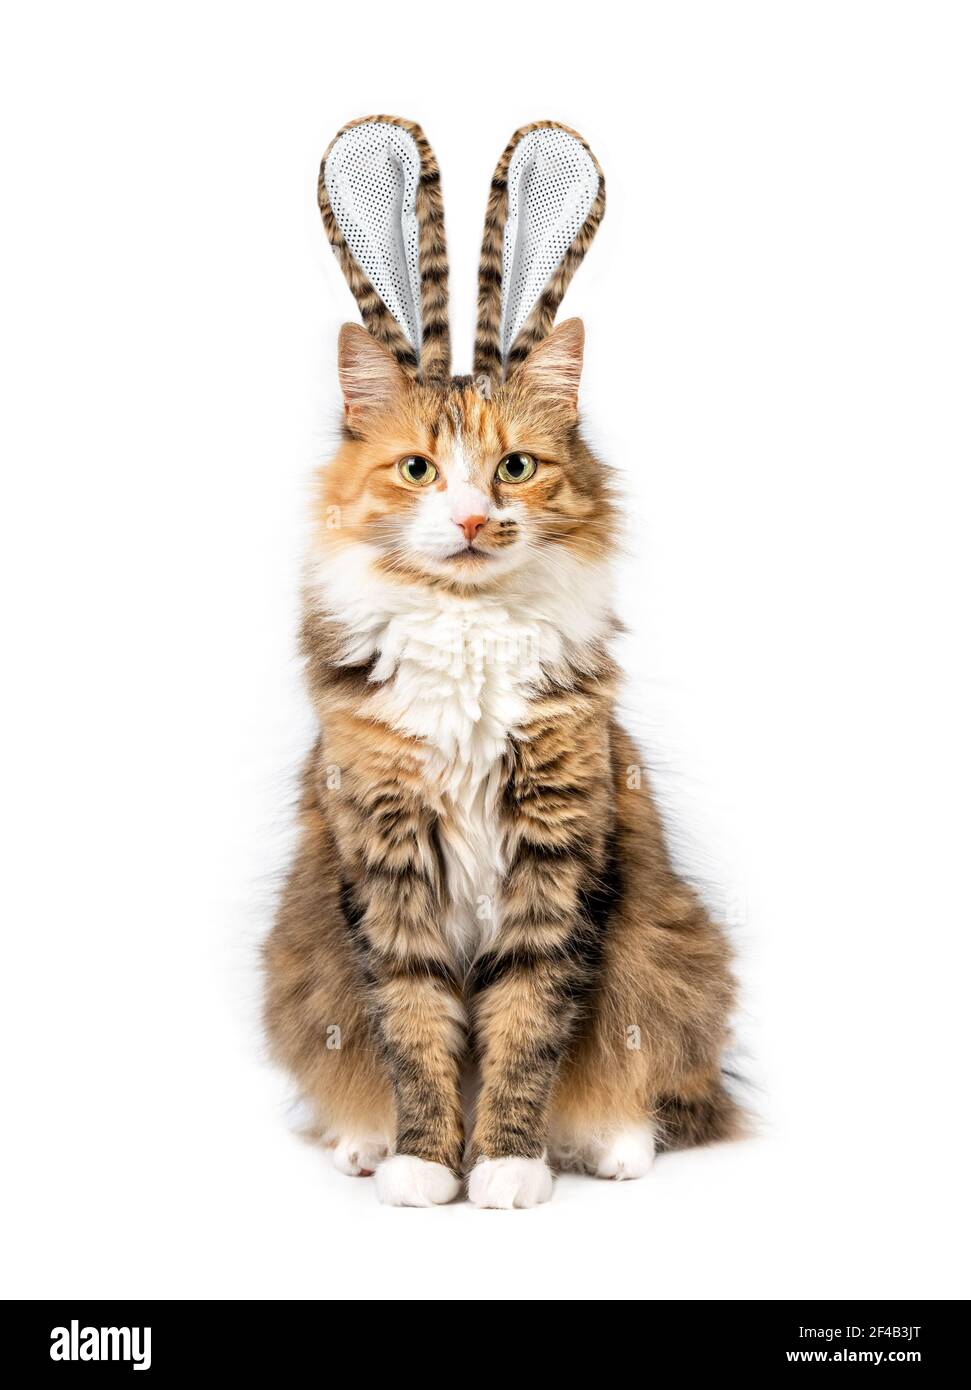 Chat habillé comme lapin de Pâques. Portrait de chat à thème des fêtes de Pâques drôle. Un chaton moelleux avec des oreilles de lapin en fourrure assorties est assis et regarde la came Banque D'Images